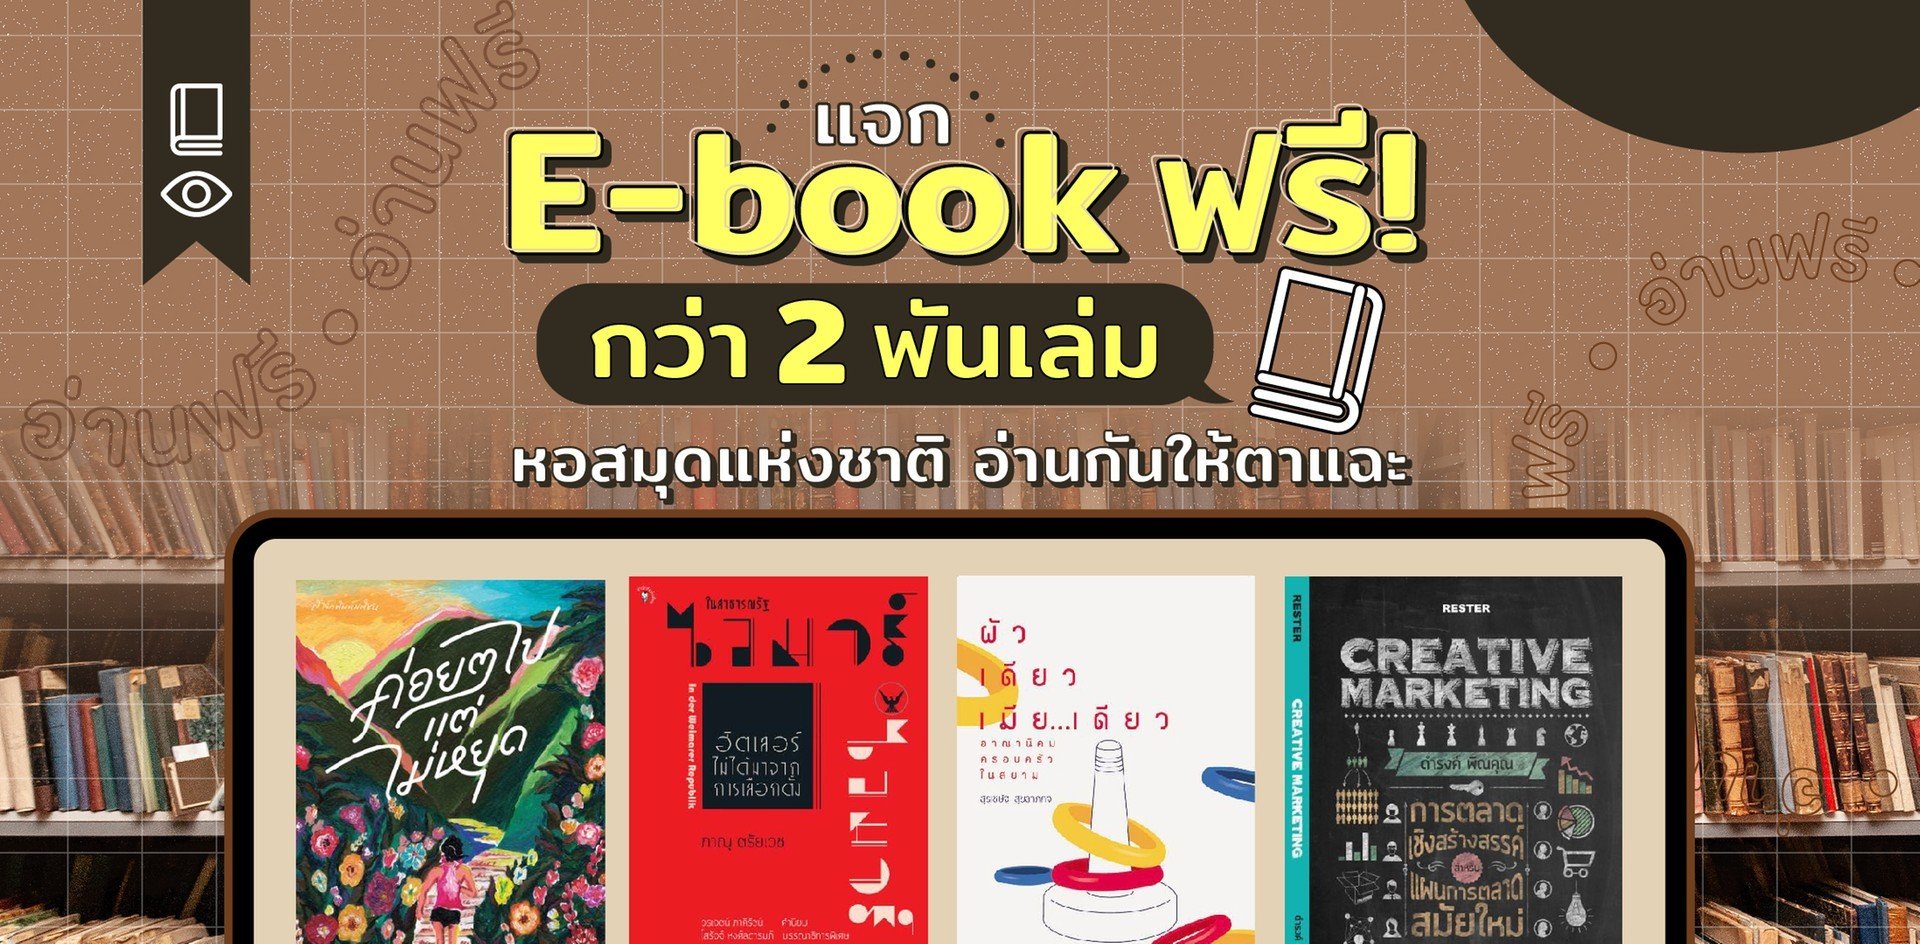 แจกหนังสืออ่านฟรี! E-Book กว่า 2 พันเล่มที่หอสมุดแห่งชาติ อ่านเลย! - Wongnai